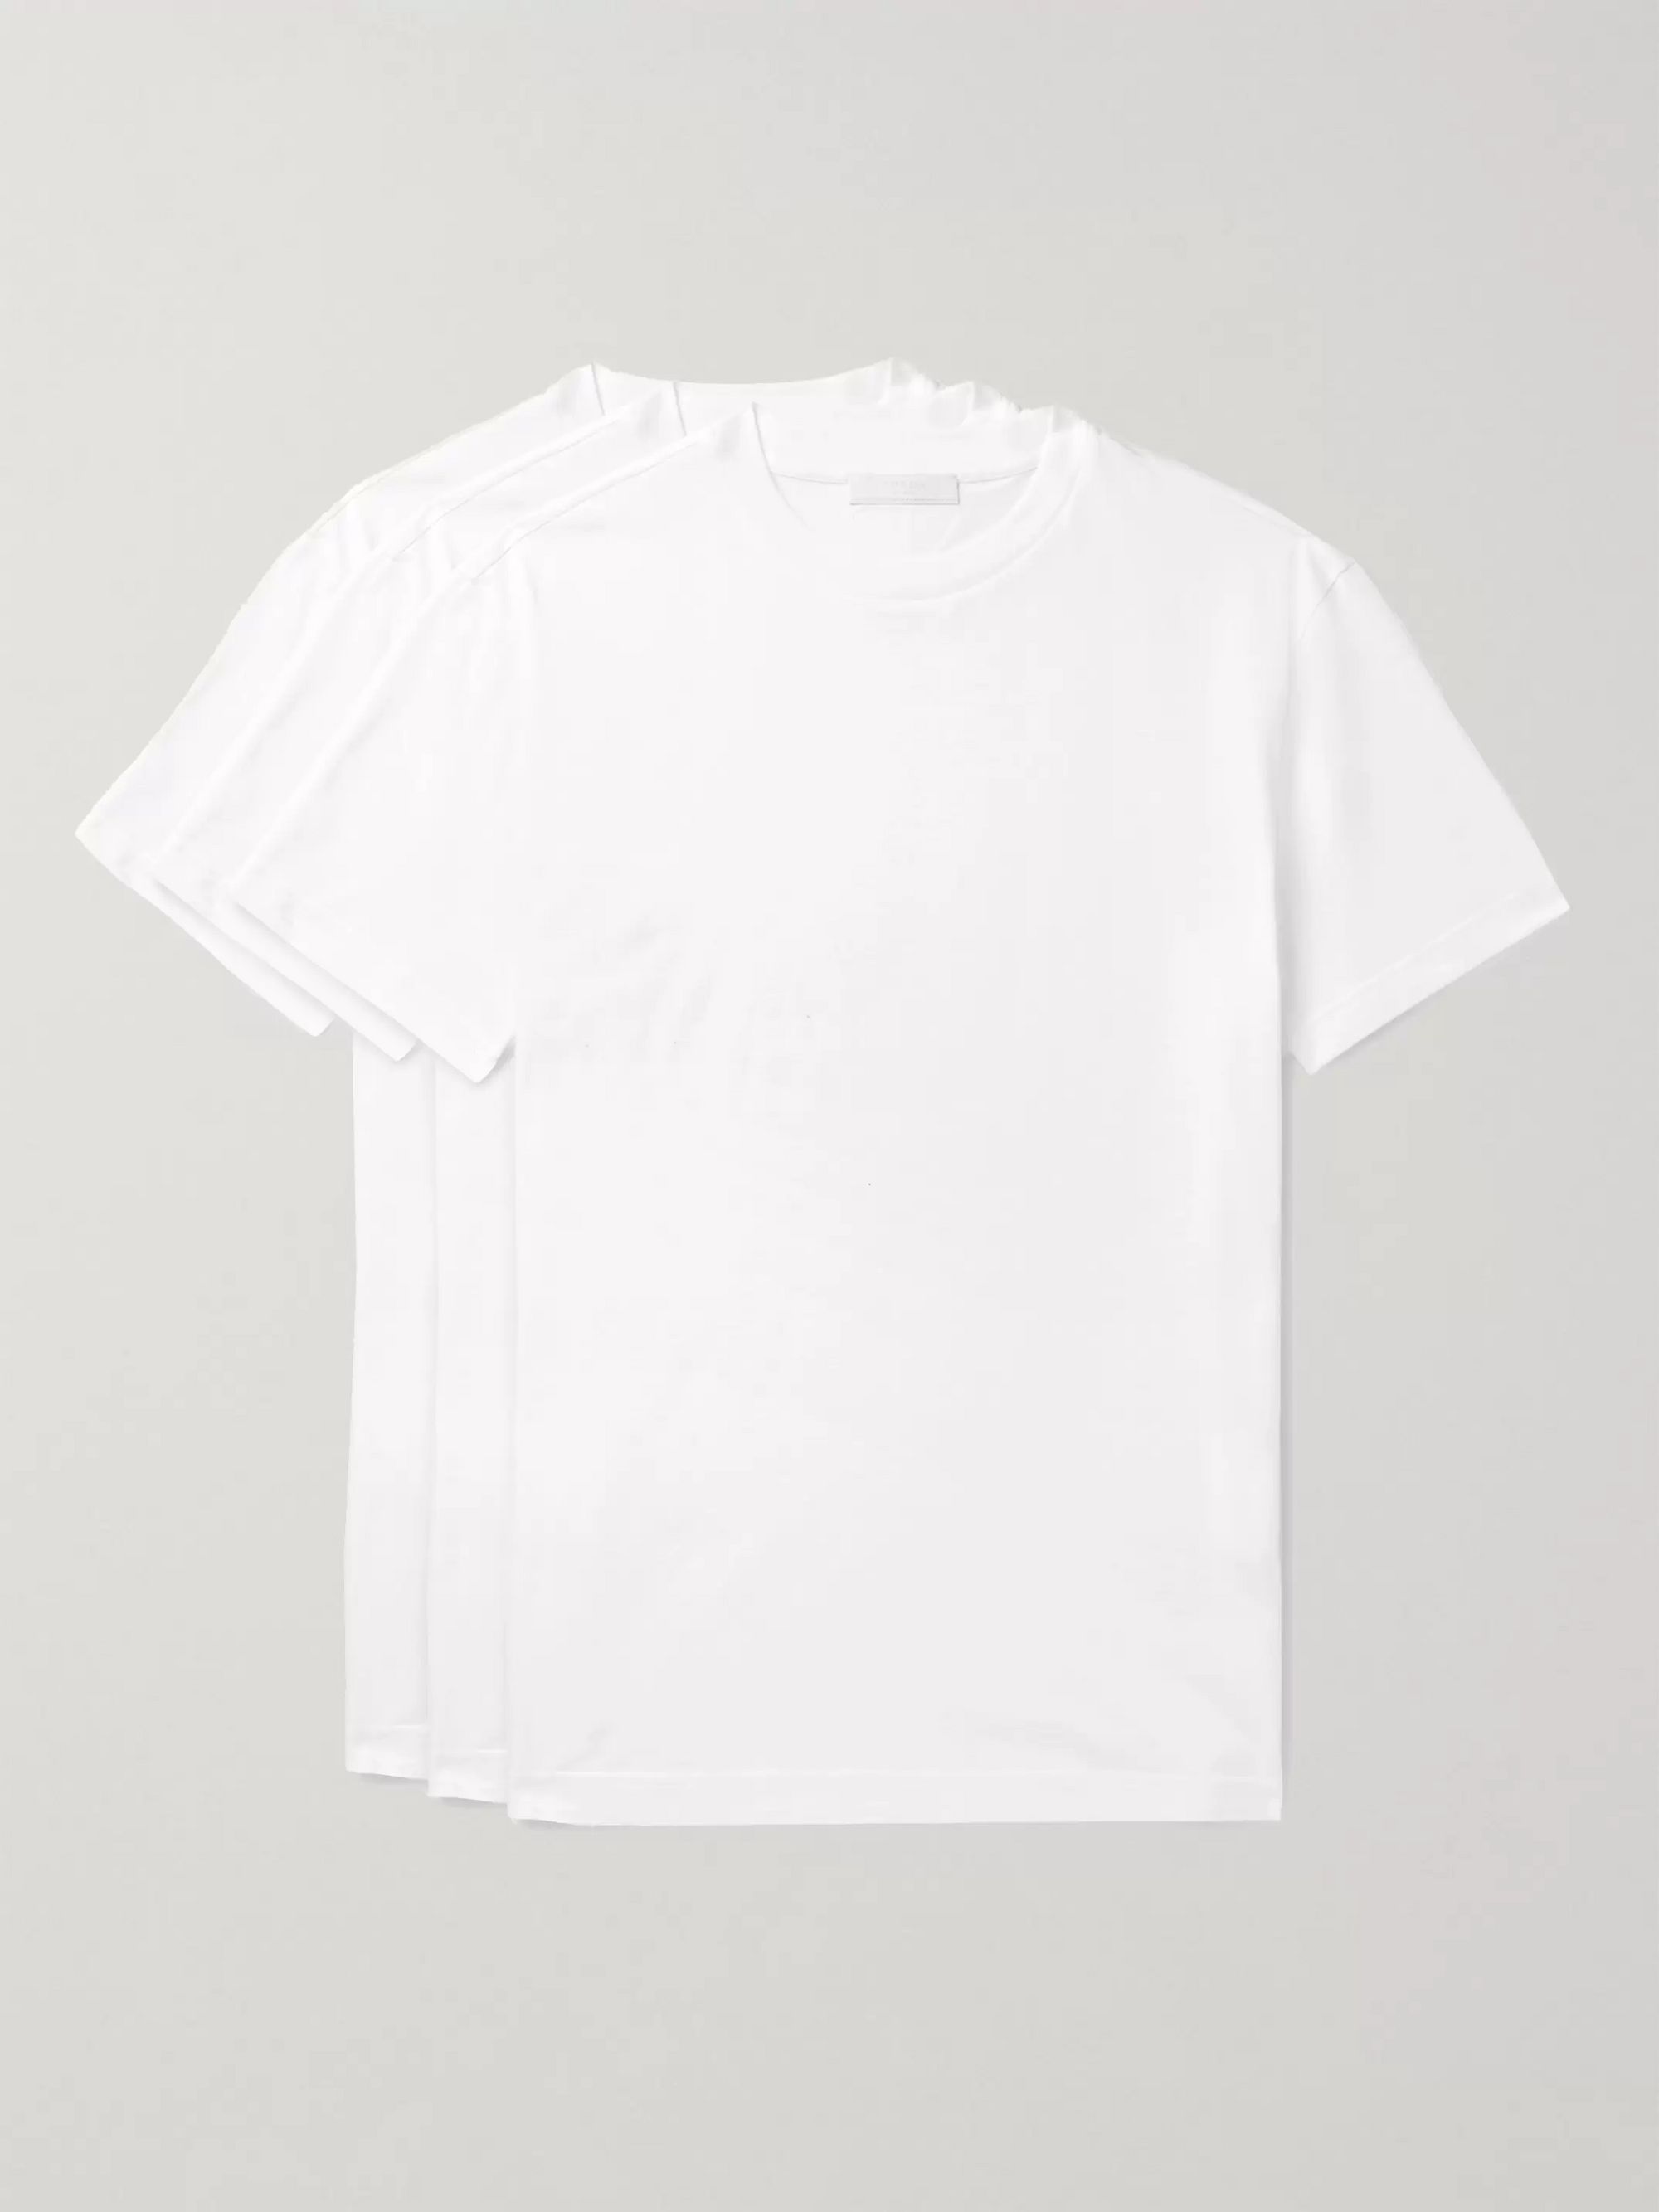 prada white t shirt 3 pack